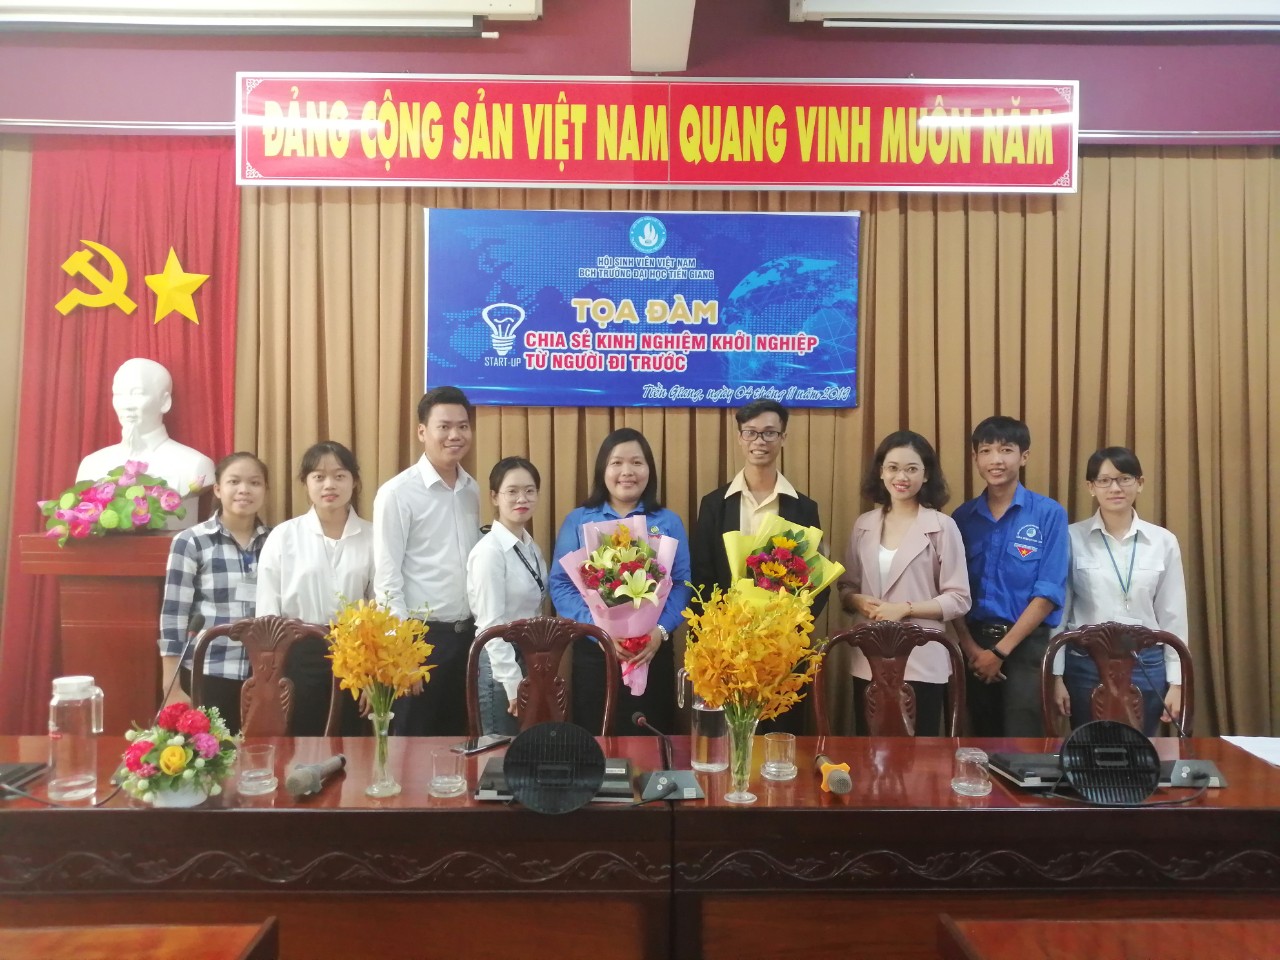 Tọa đàm "Chia sẻ kinh nghiệm khởi nghiệp từ người đi trước" dành cho sinh viên Trường Đại học Tiền Giang